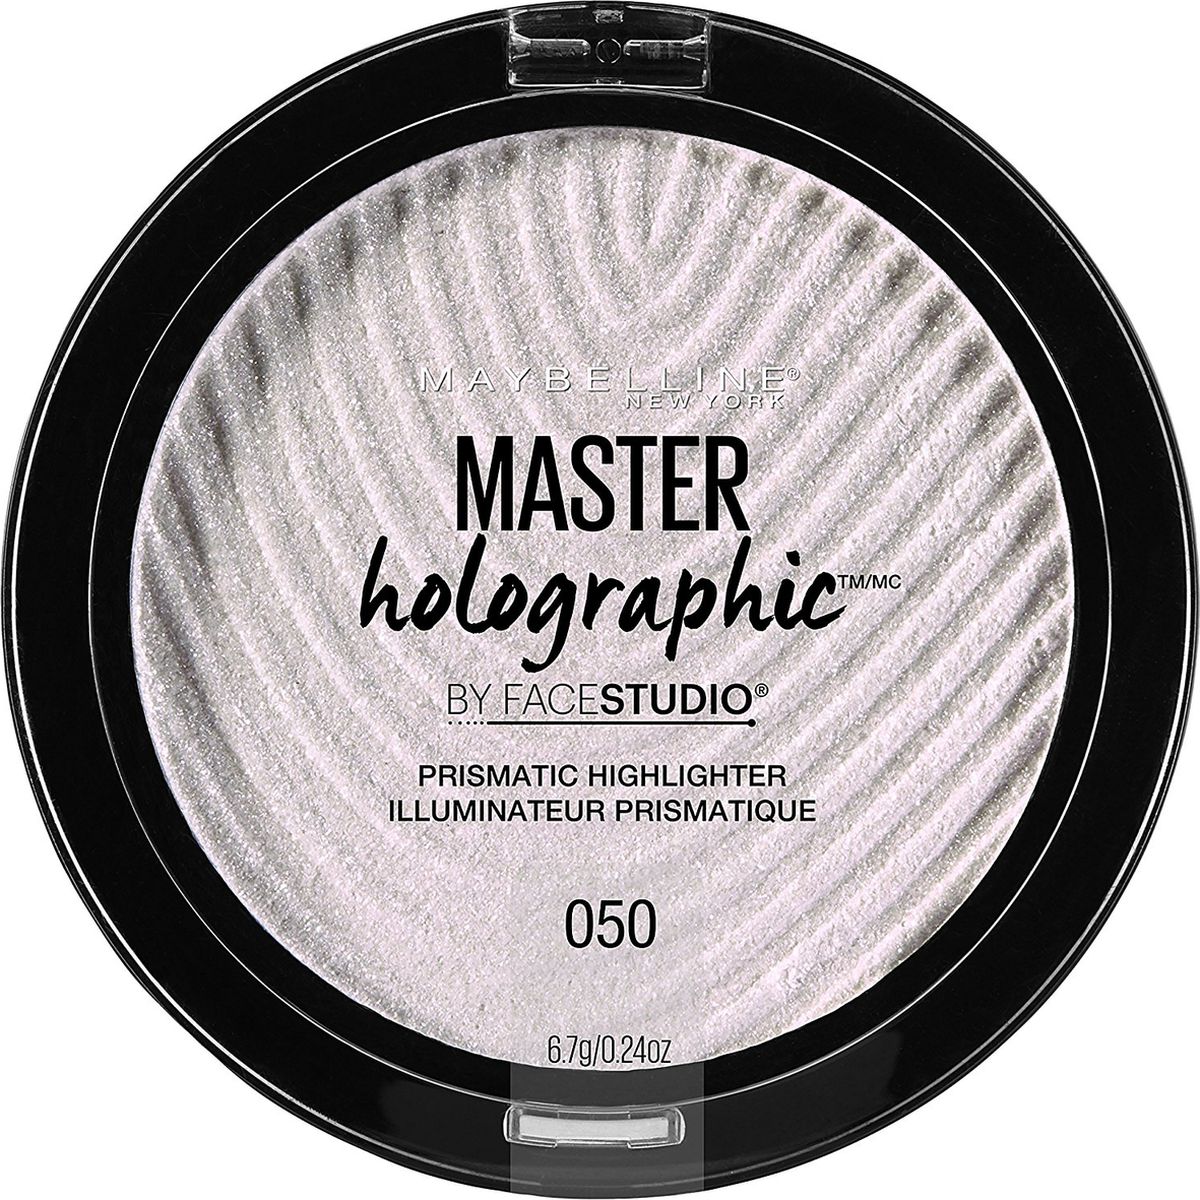 Maybelline New York Хайлайтер для лица Master Holographic Prismatic, для сияния кожи, оттенок Универсальный, 6,7 г